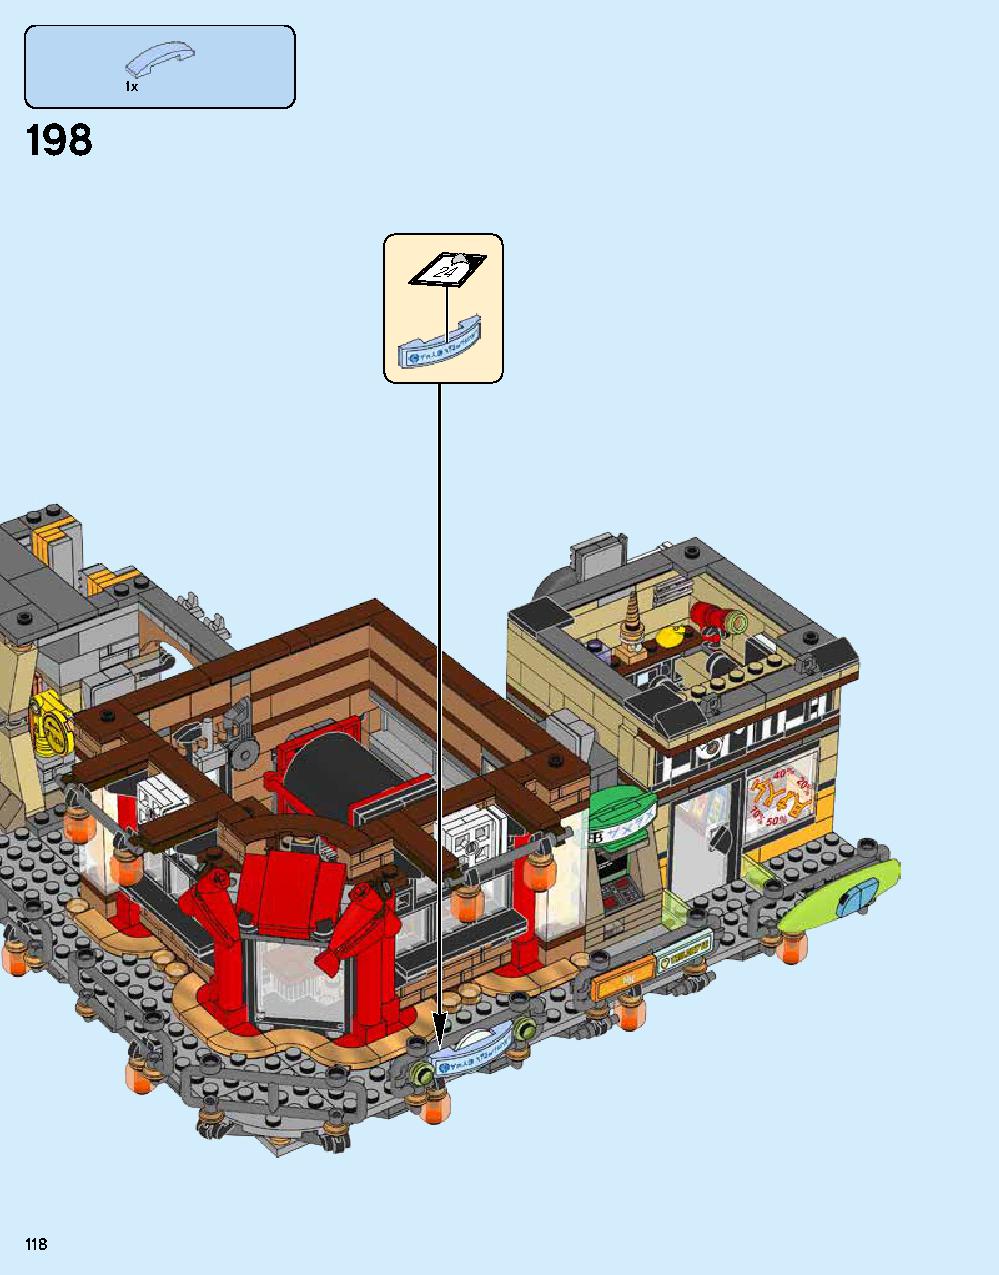 ニンジャゴー シティ 70620 レゴの商品情報 レゴの説明書・組立方法 118 page